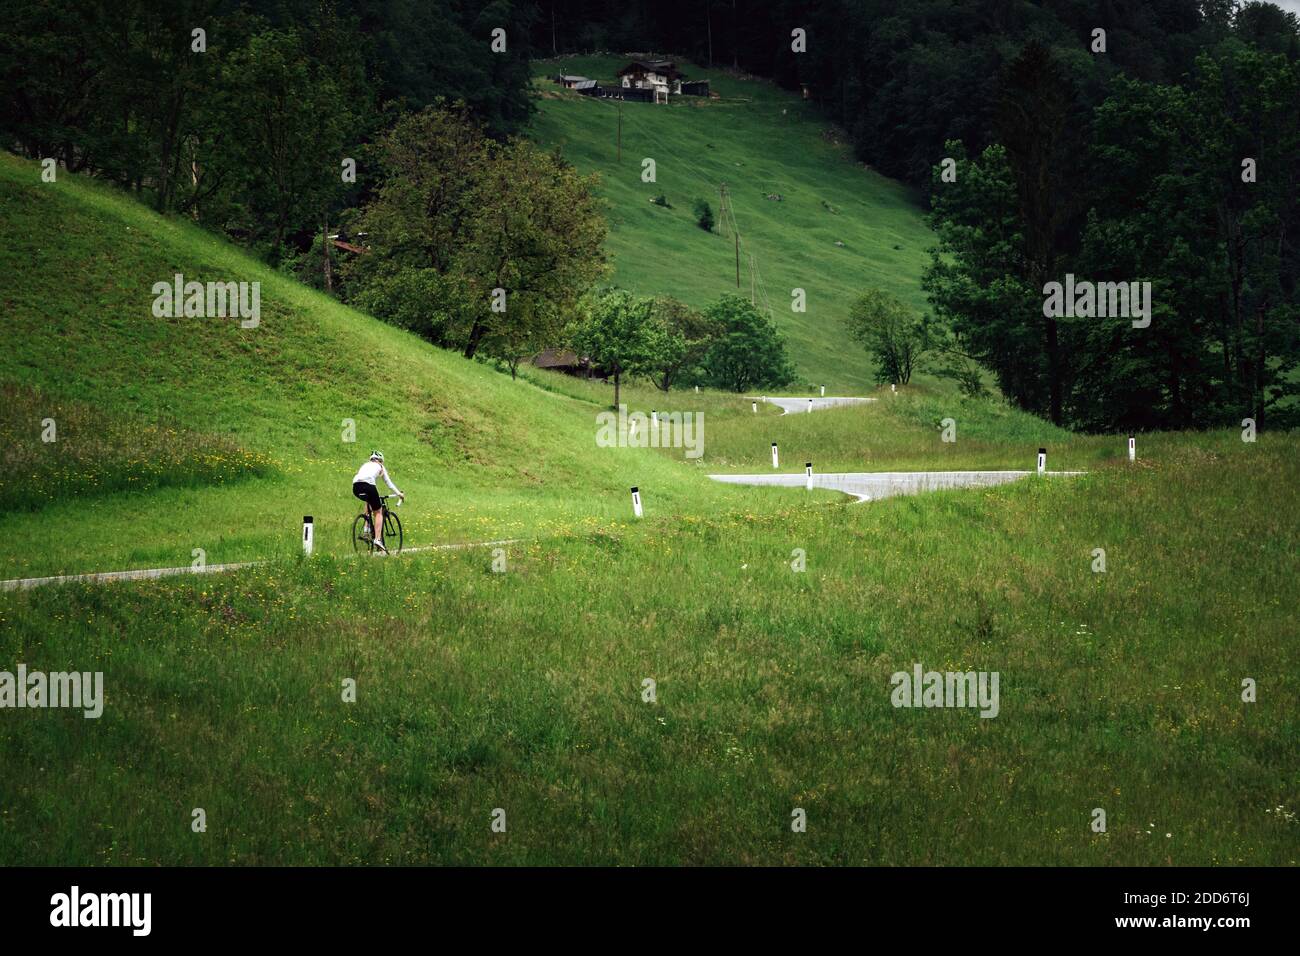 Eine Radfahrerin rast eine Straße in der Nähe von Krispl, Österreich. Stockfoto